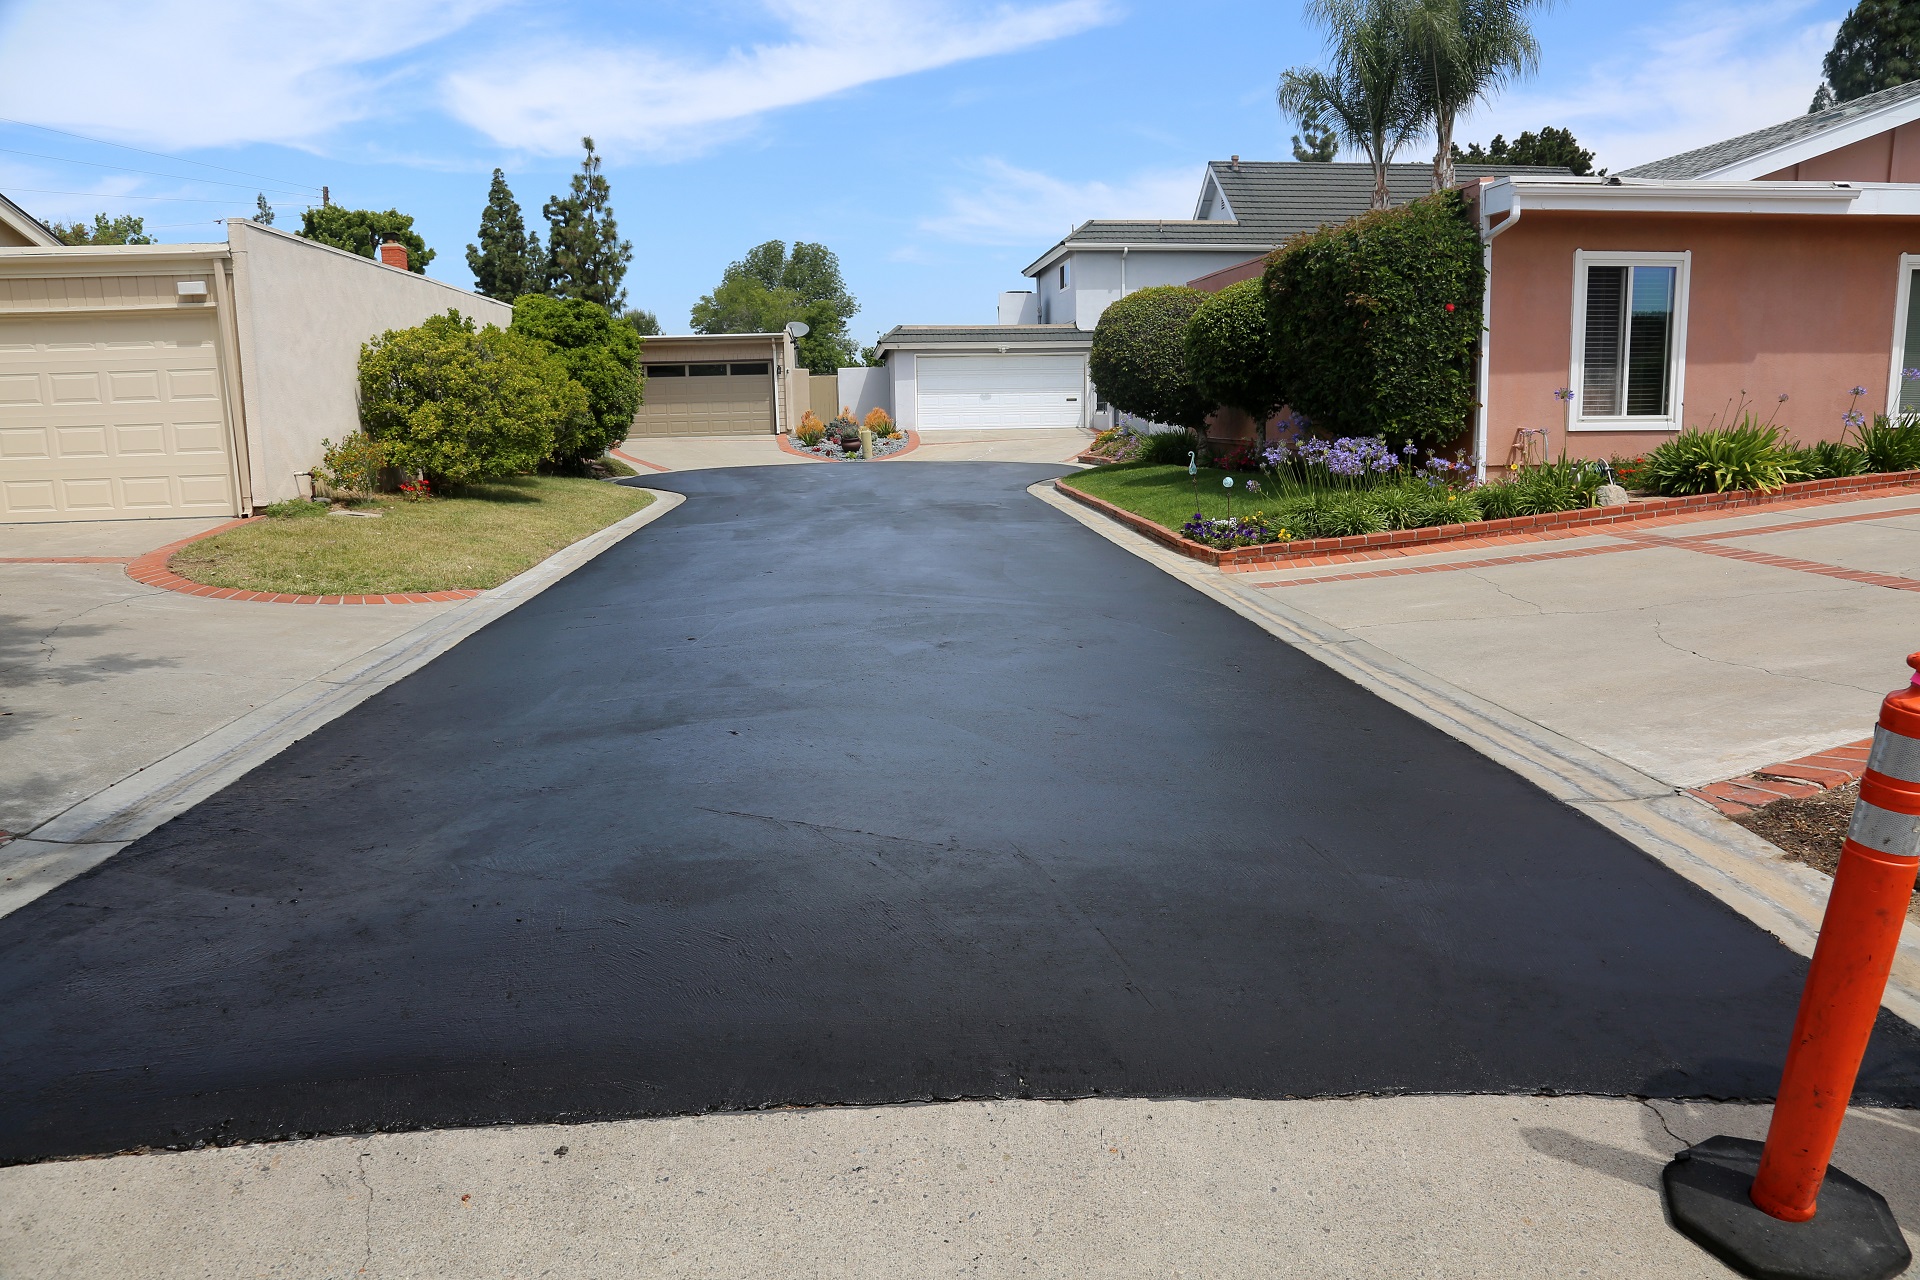 A freshly laid asphalt surface